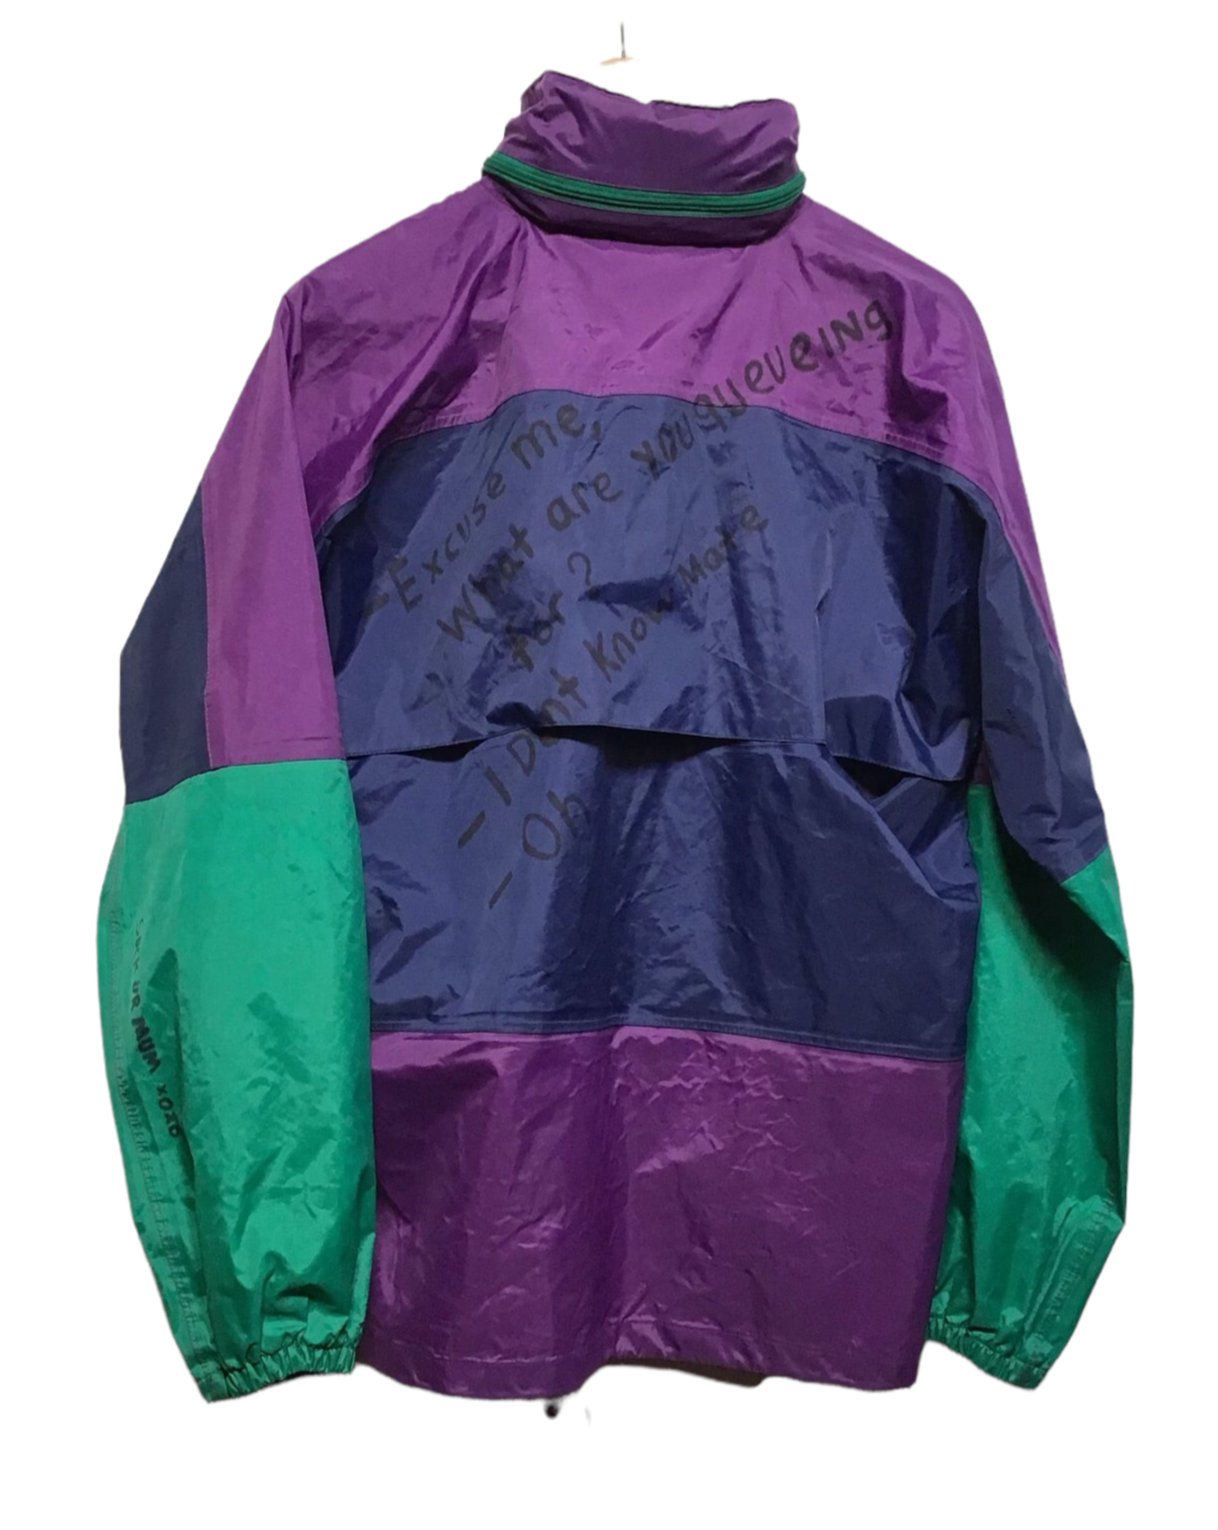 Festival Wind Breaker Jacket (Size XXL)